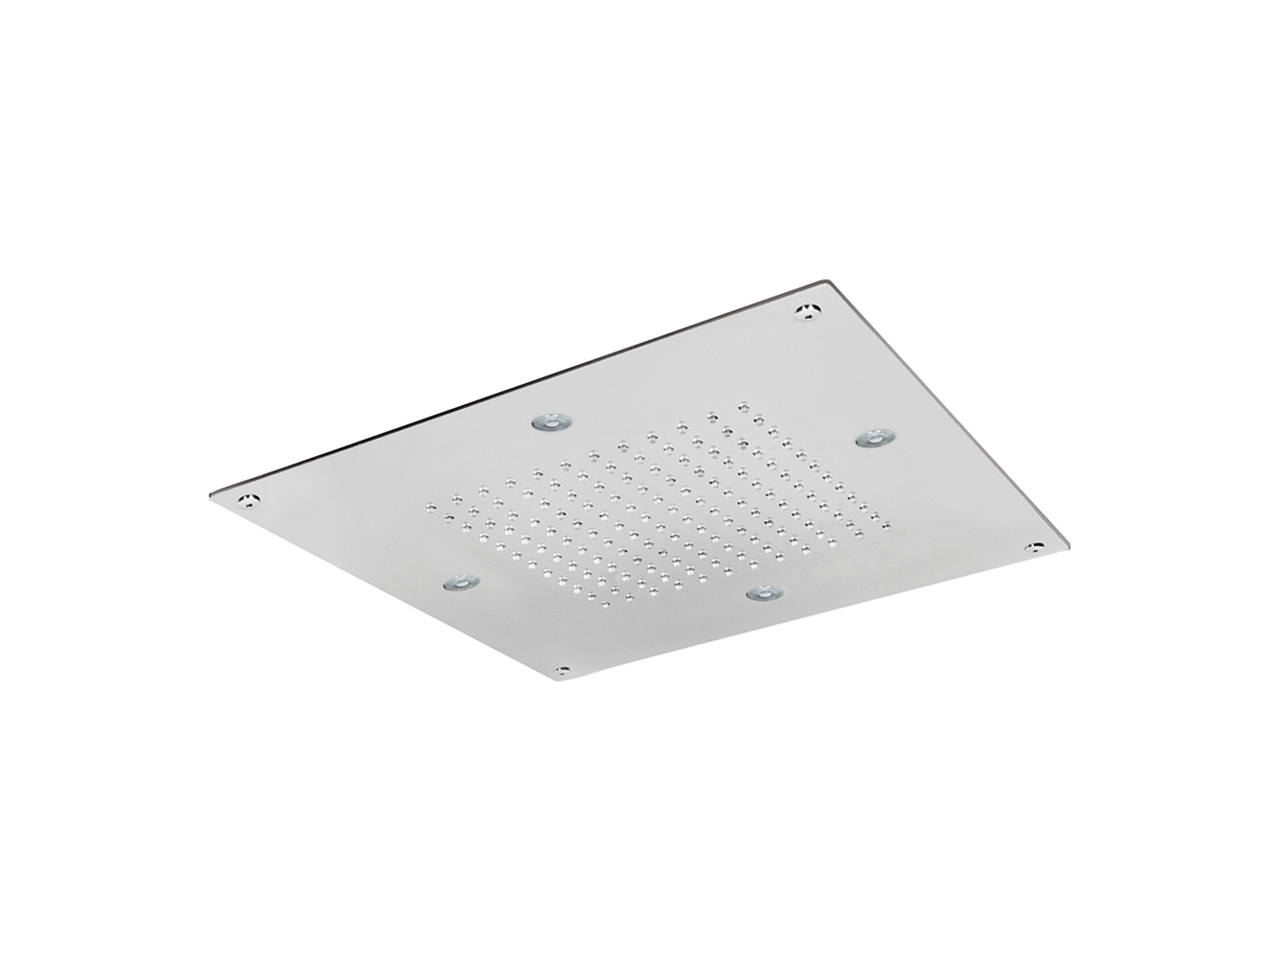 320x320mm stainless steel false ceiling showerhead ZEN - v1